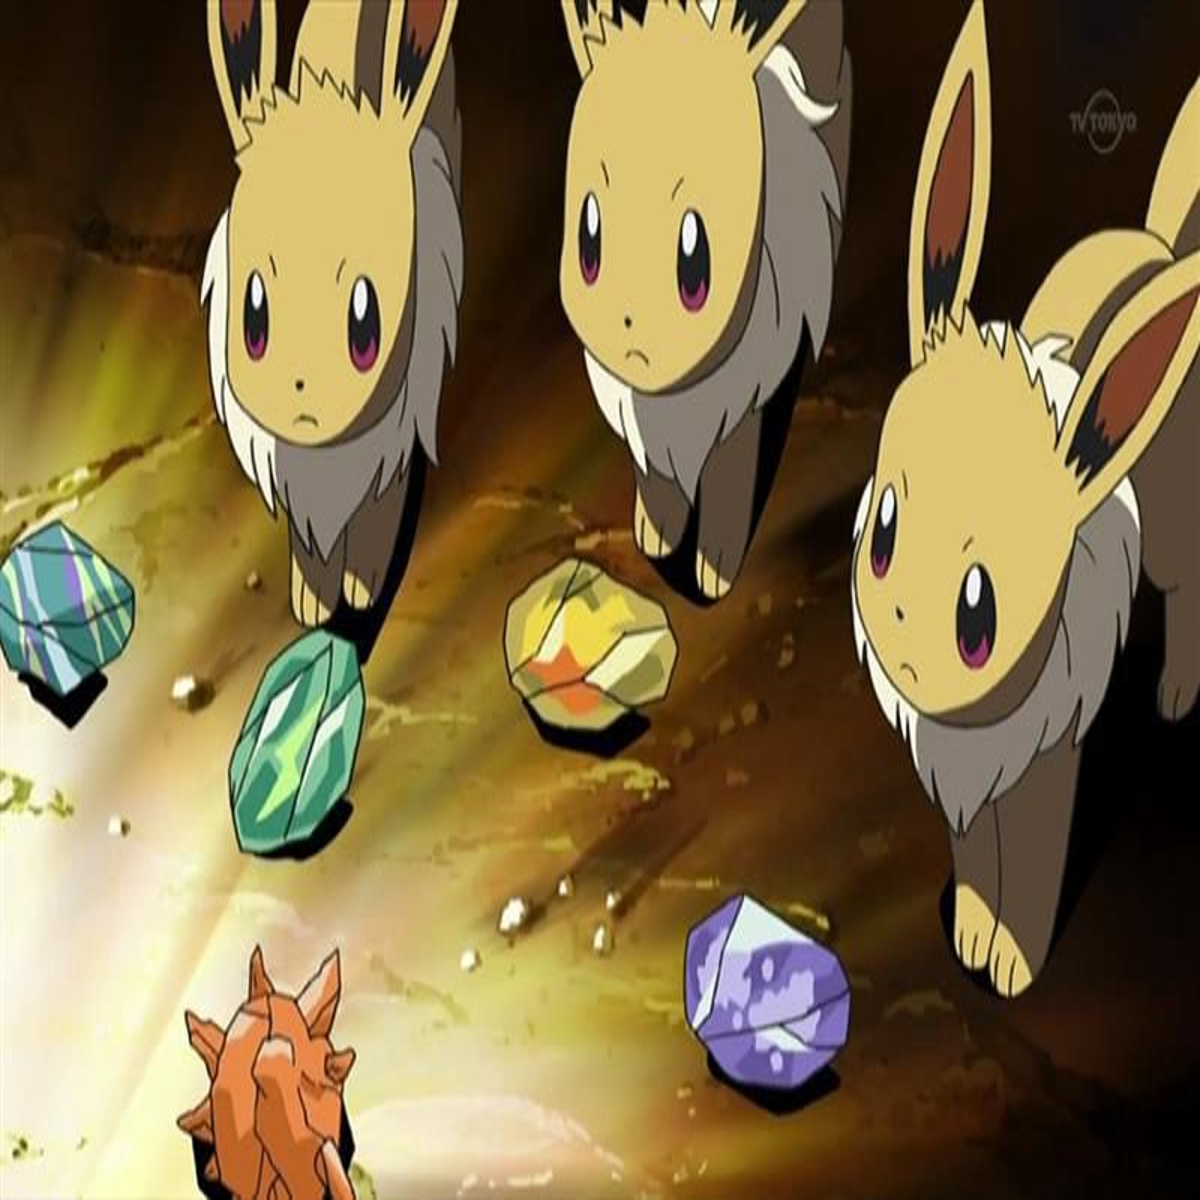 How to get all gen 1 & 2 Shiny Eevee Evolution! Eeveelution in Pokemon Go 